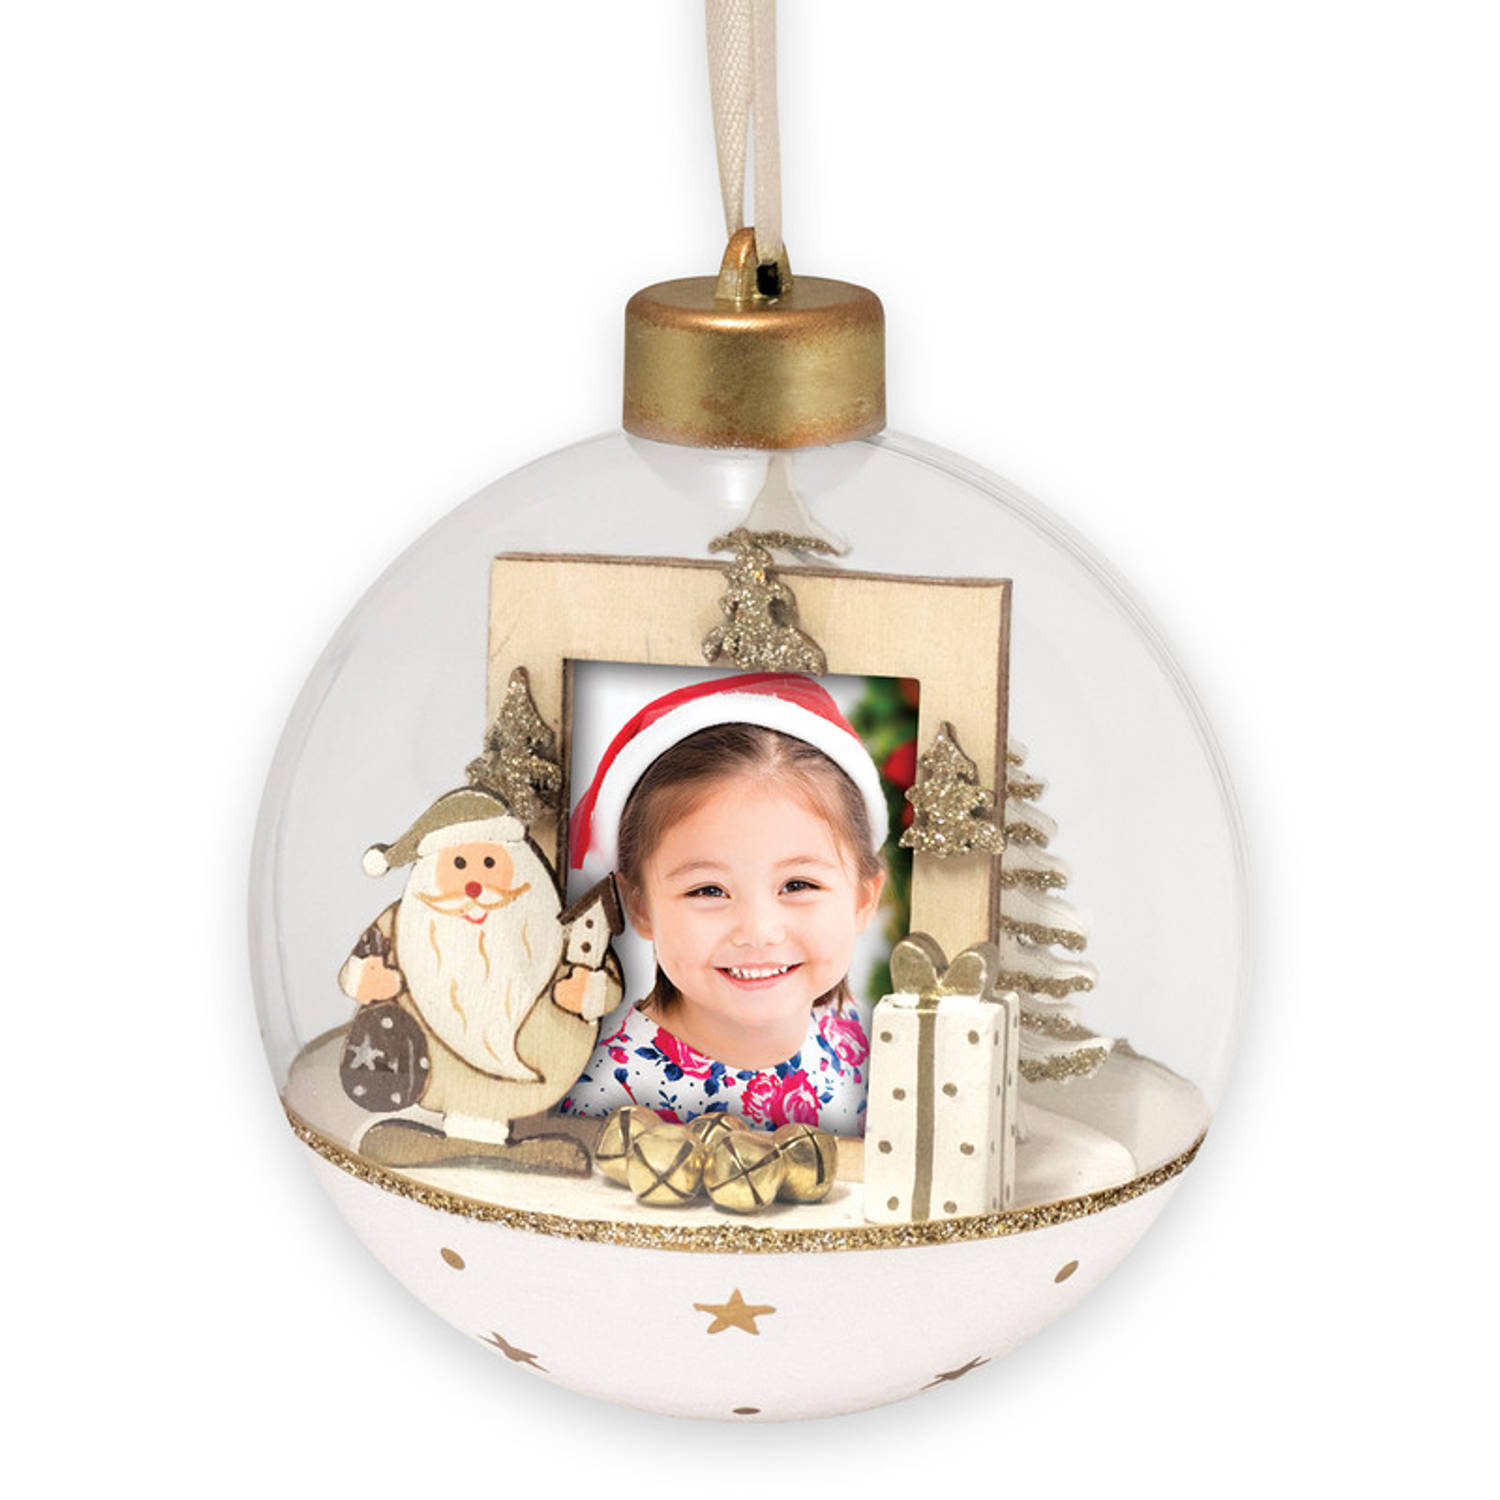 HAES DECO - Foto Kerstbal XL voor pasfoto 3,5 x 4,5 cm - Kerstbal Wit met Kerstman - Rond 10 cm - Kerstdecoratie voor Binnen - LS447HS